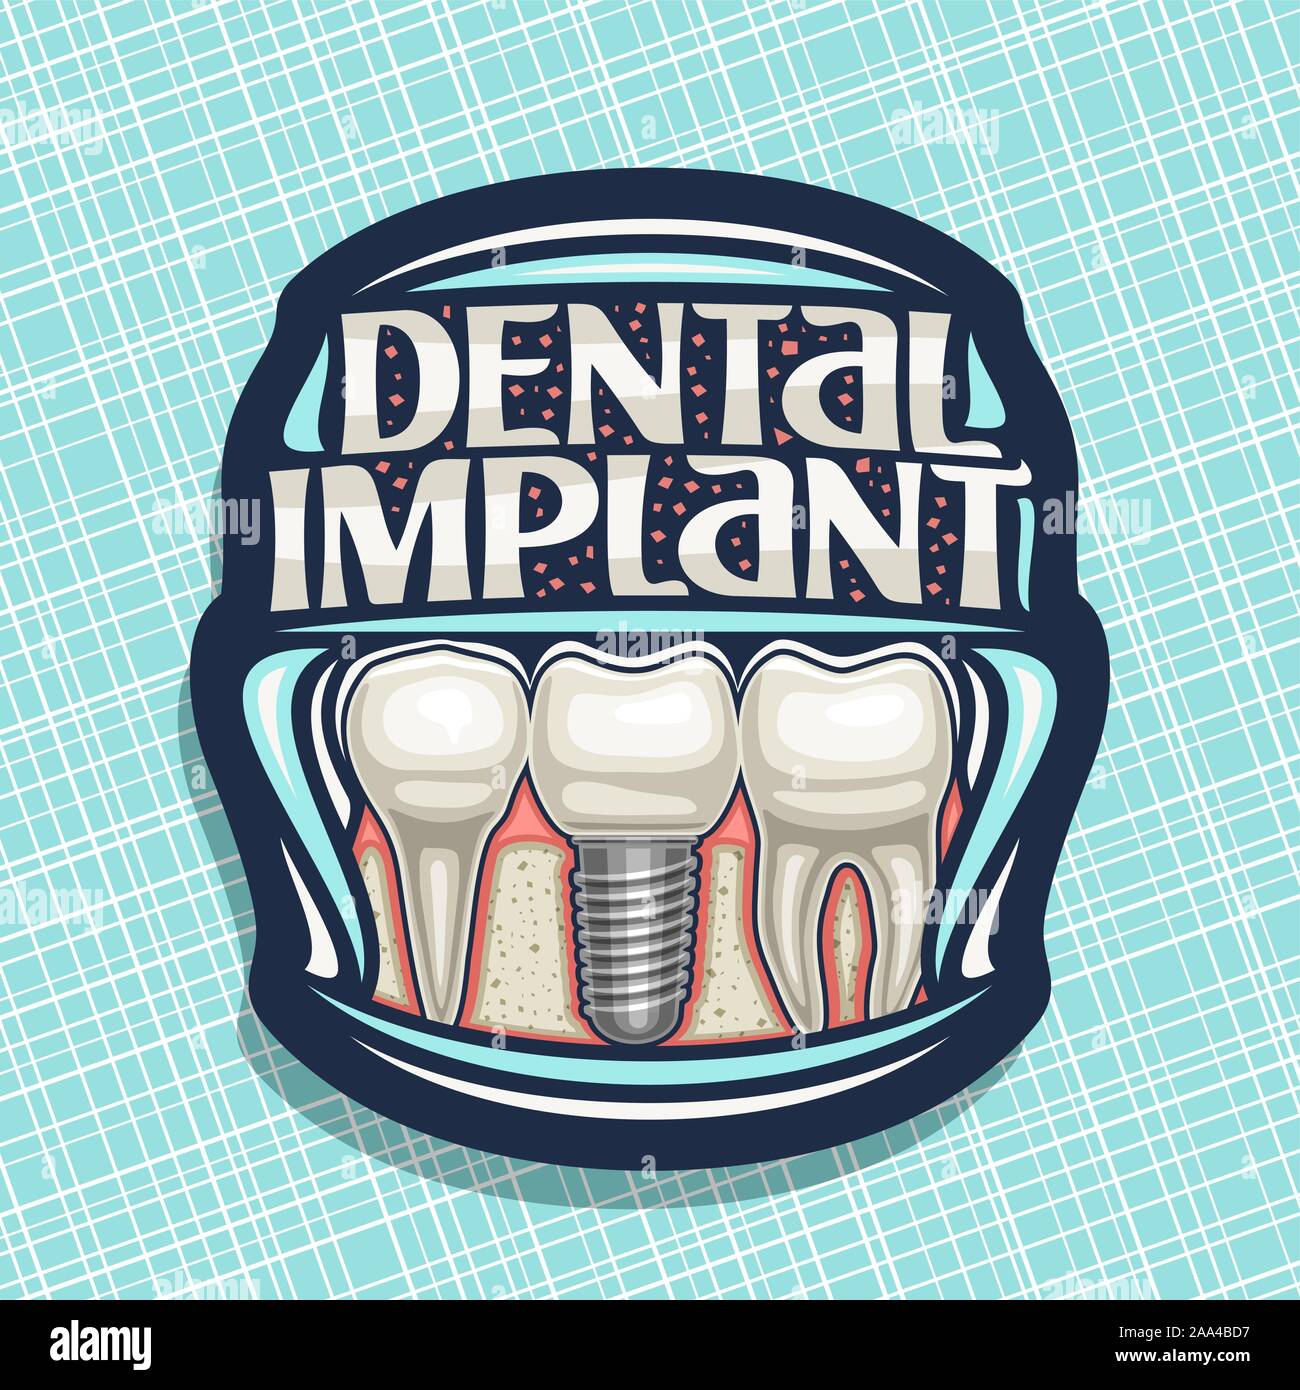 Logo Vector-implants dentaires, sombre décoratif avec étiquette 3 cartoon dents humaines dans la mâchoire, lettrage original des mots dental implant, panneau pour p Illustration de Vecteur